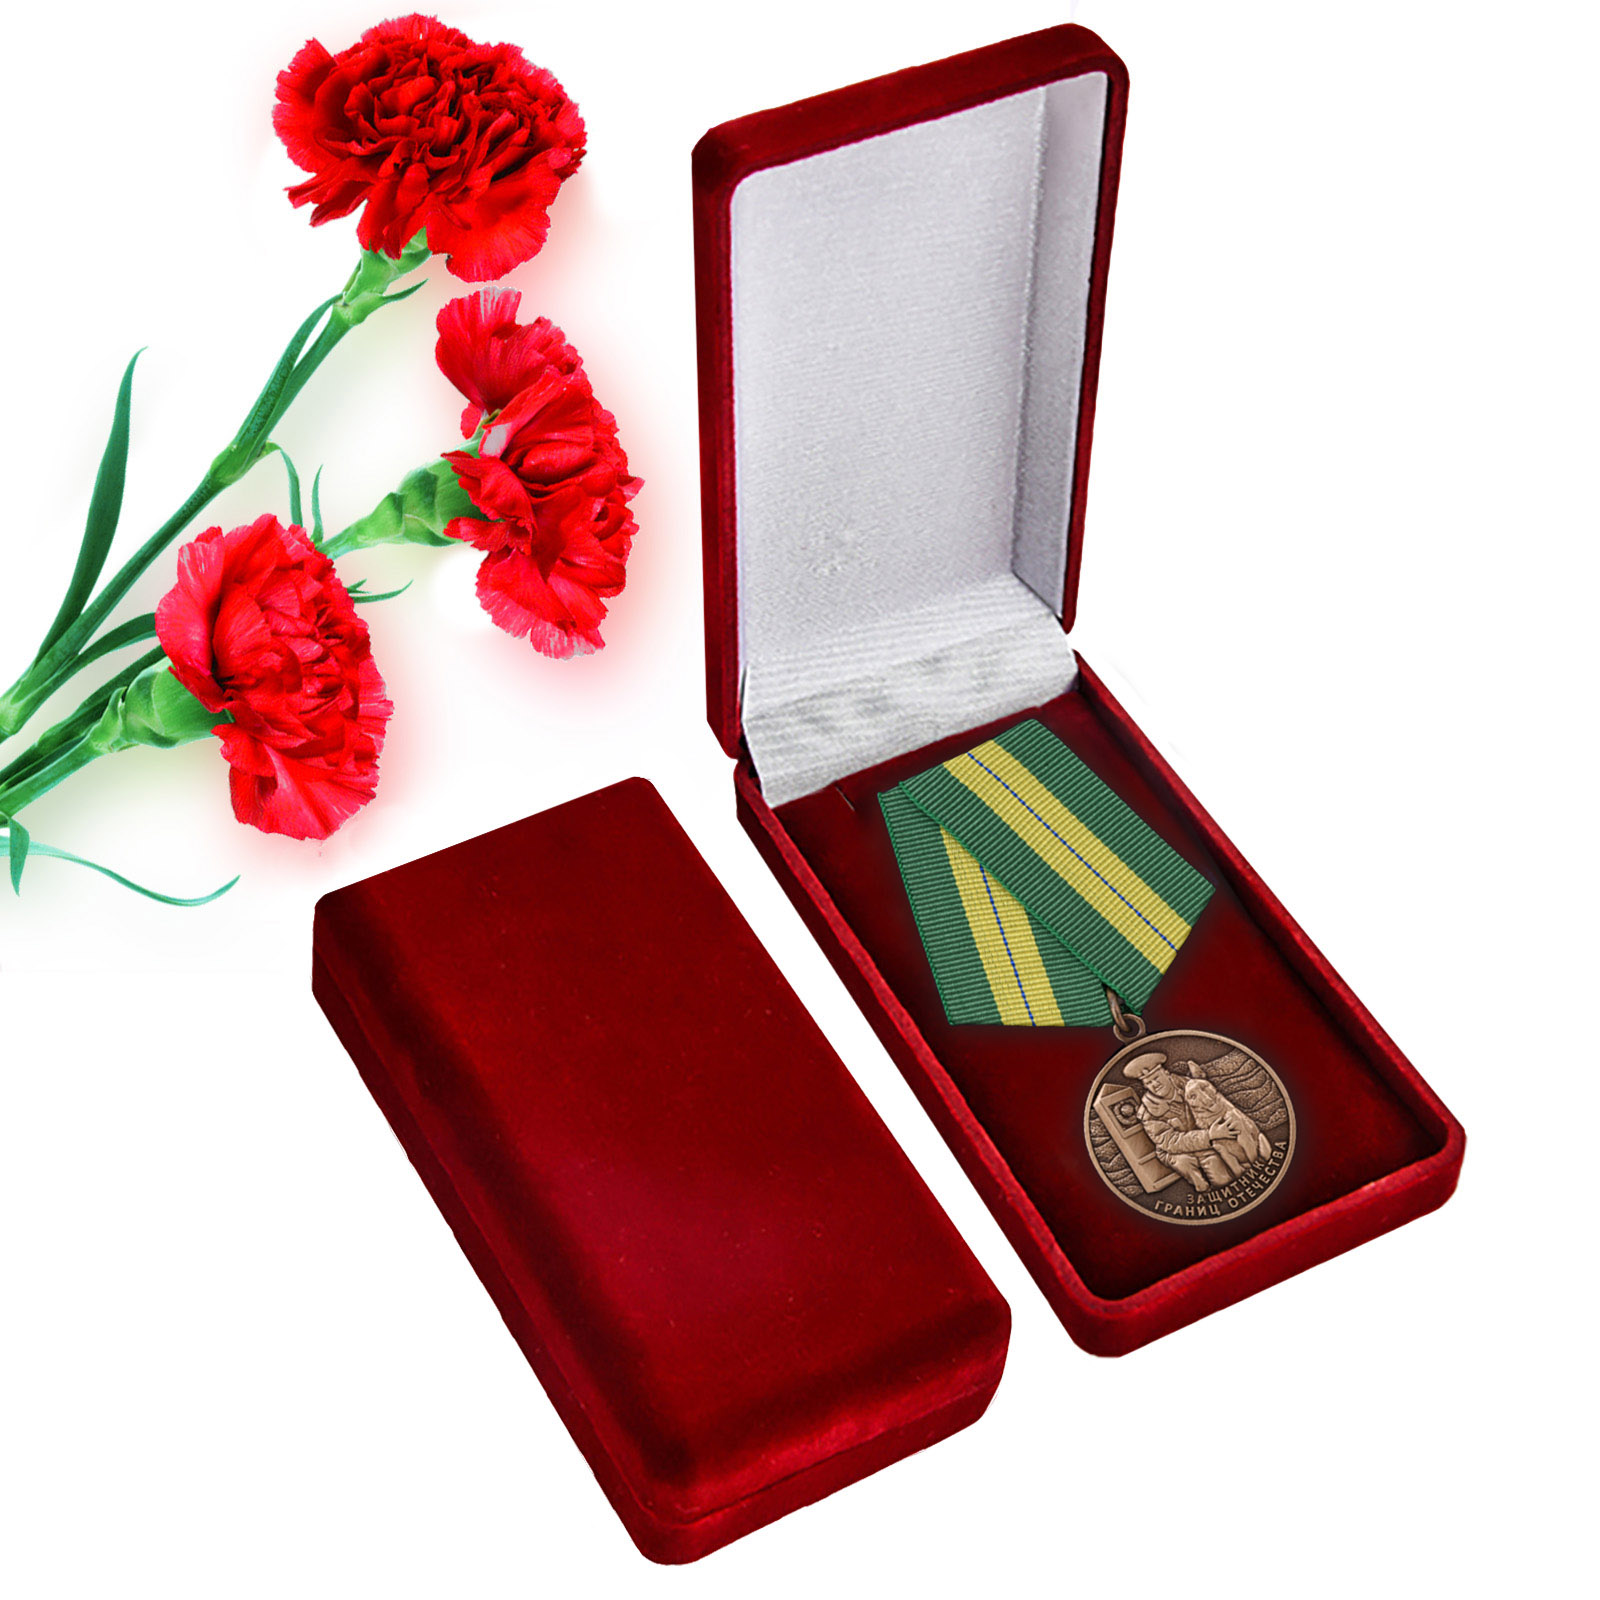 Медаль ветерану Пограничных войск